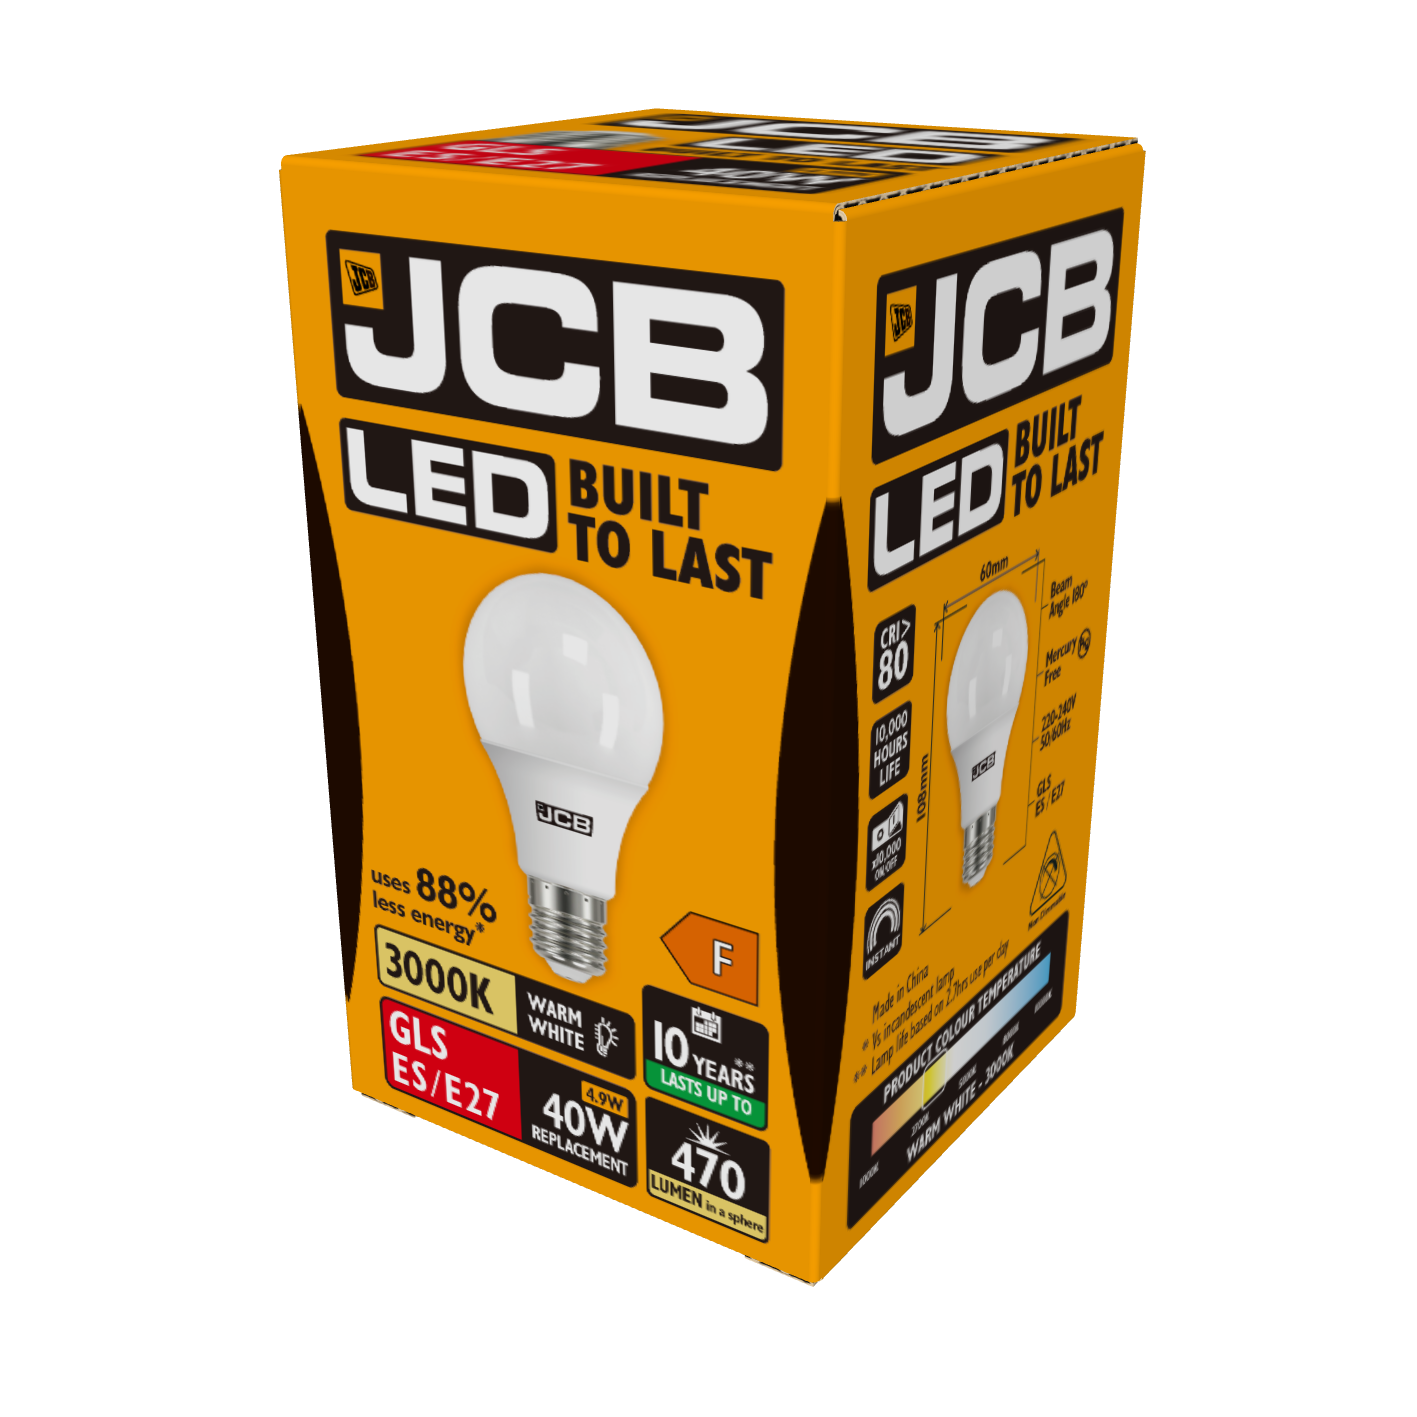 JCB LED GLS E27 (ES) 470lm 4.9W 3,000K (Warm White), Box of 1